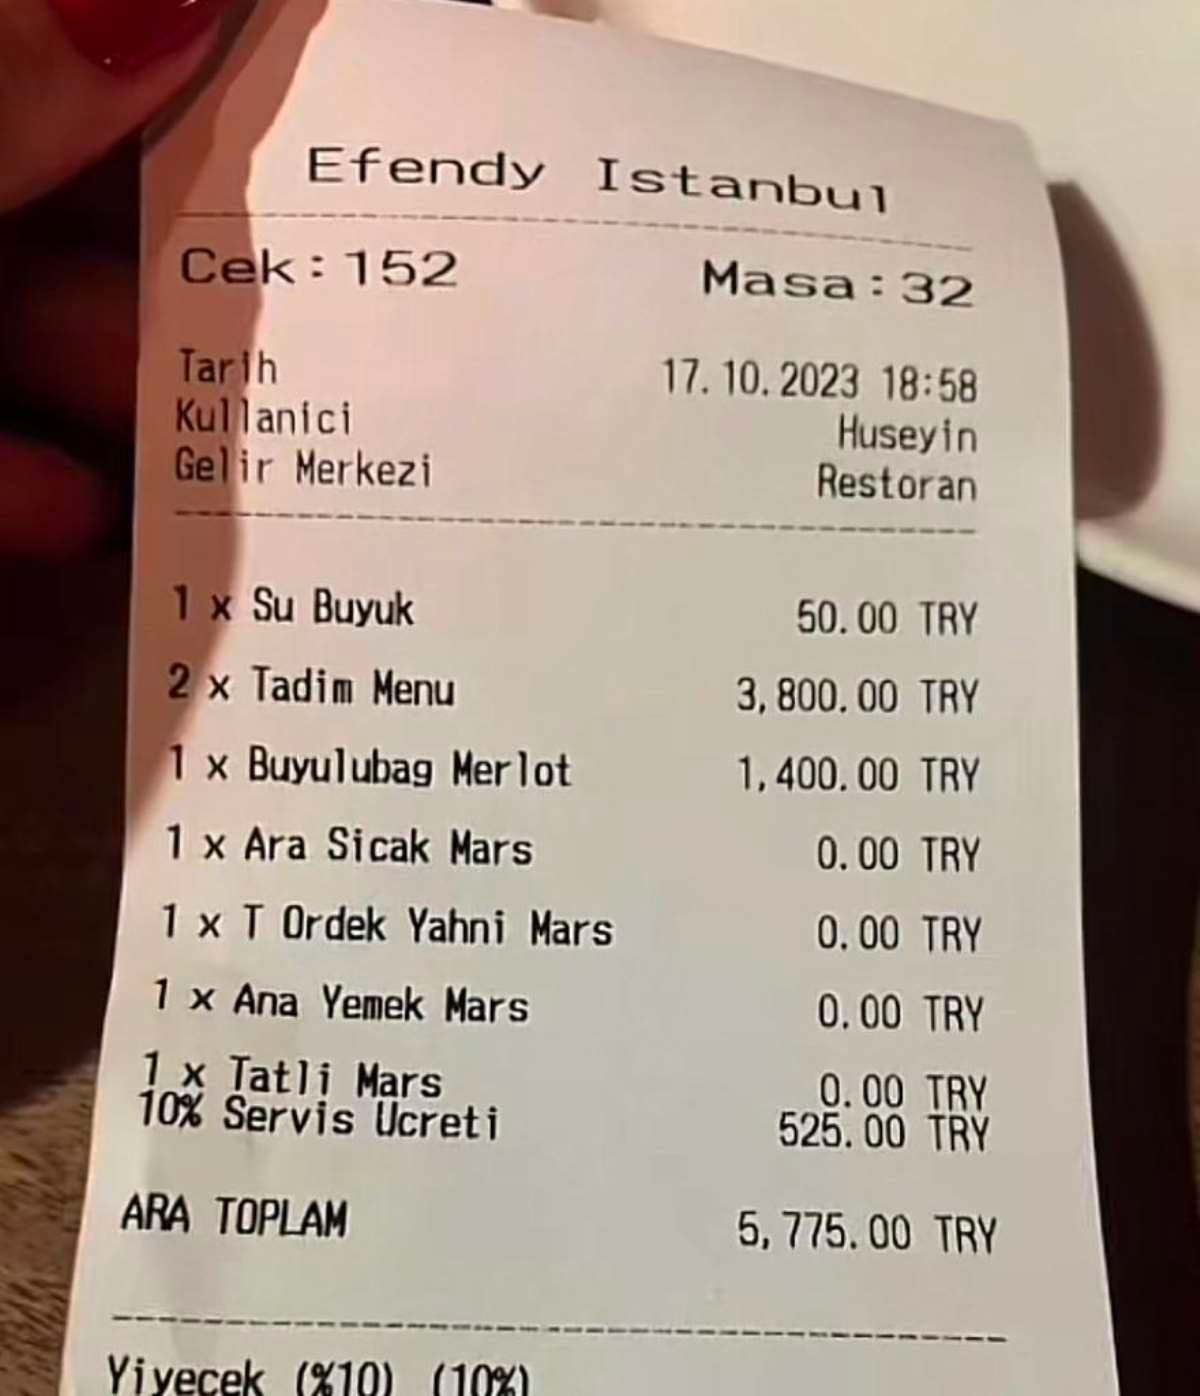 Ünlü Şef Somer Sivrioğlu'nun restoranına ait adisyon sosyal medyada gündem oldu